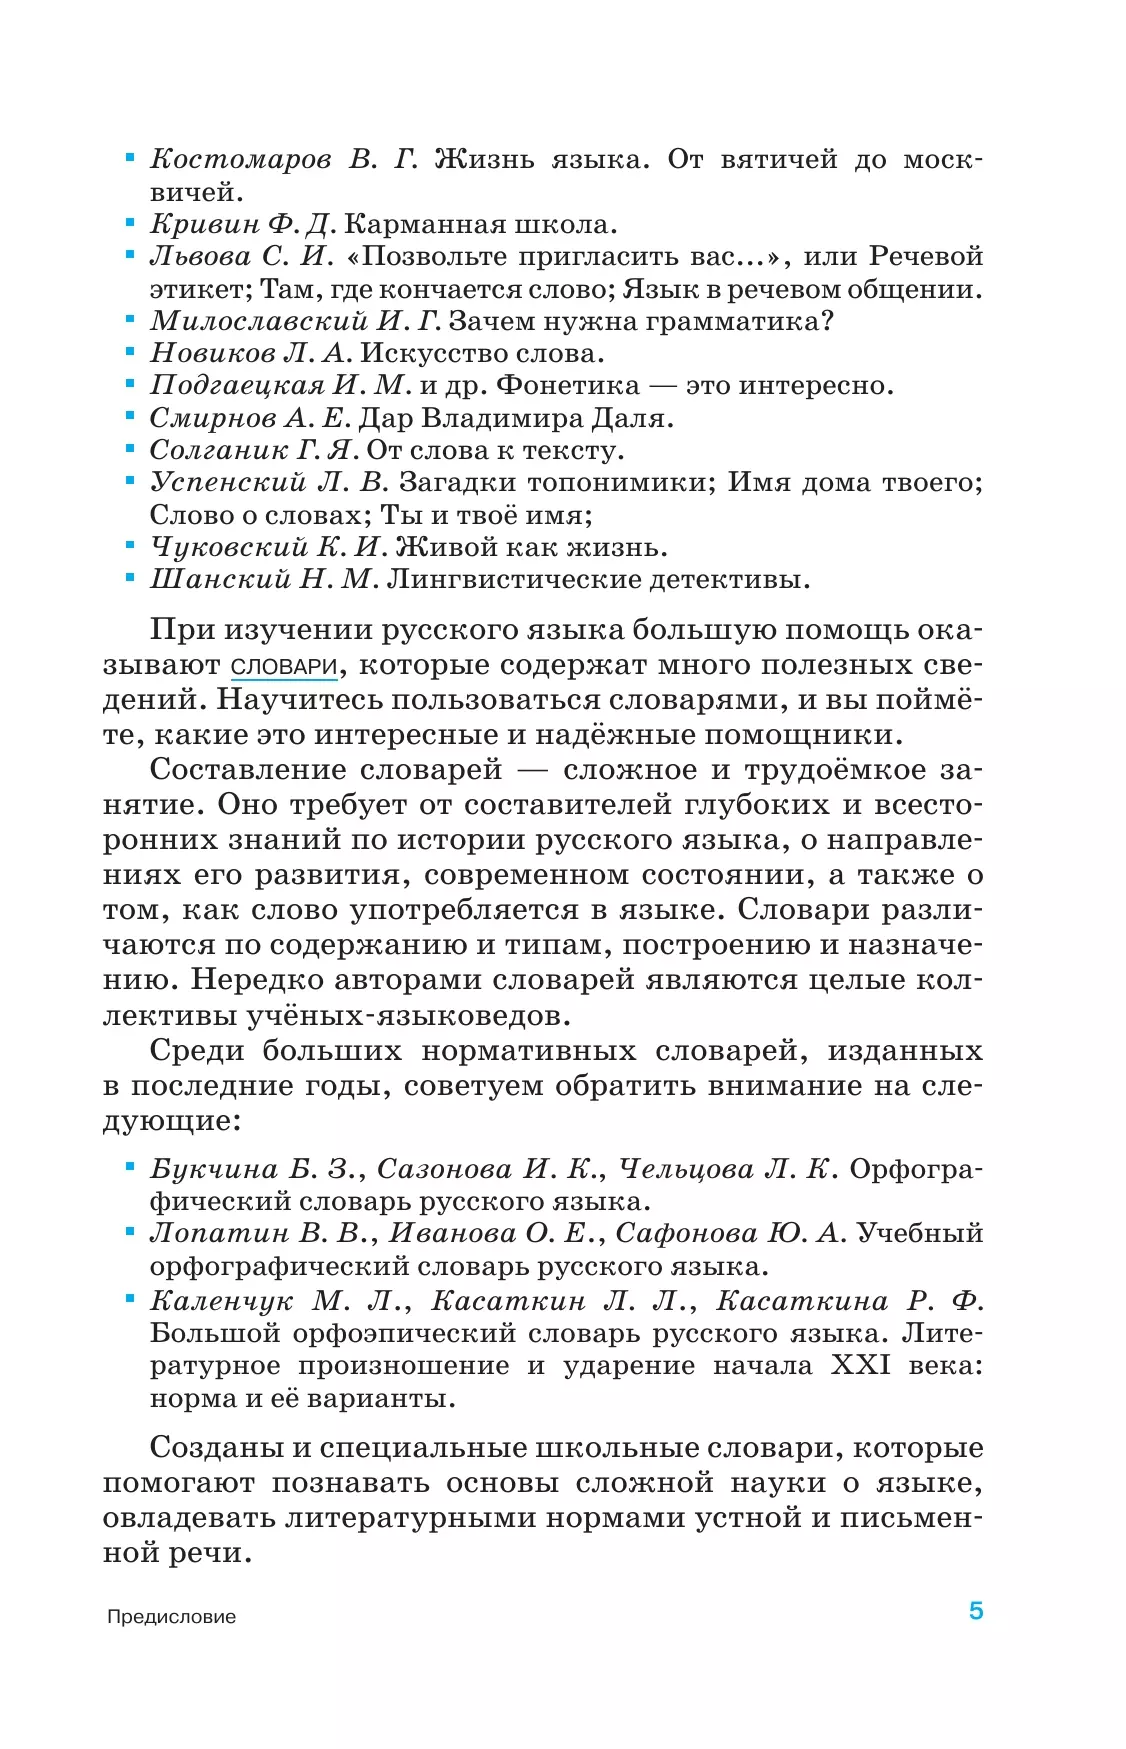 Русский язык. 5-9 классы. Учебник. Углублённый уровень 9